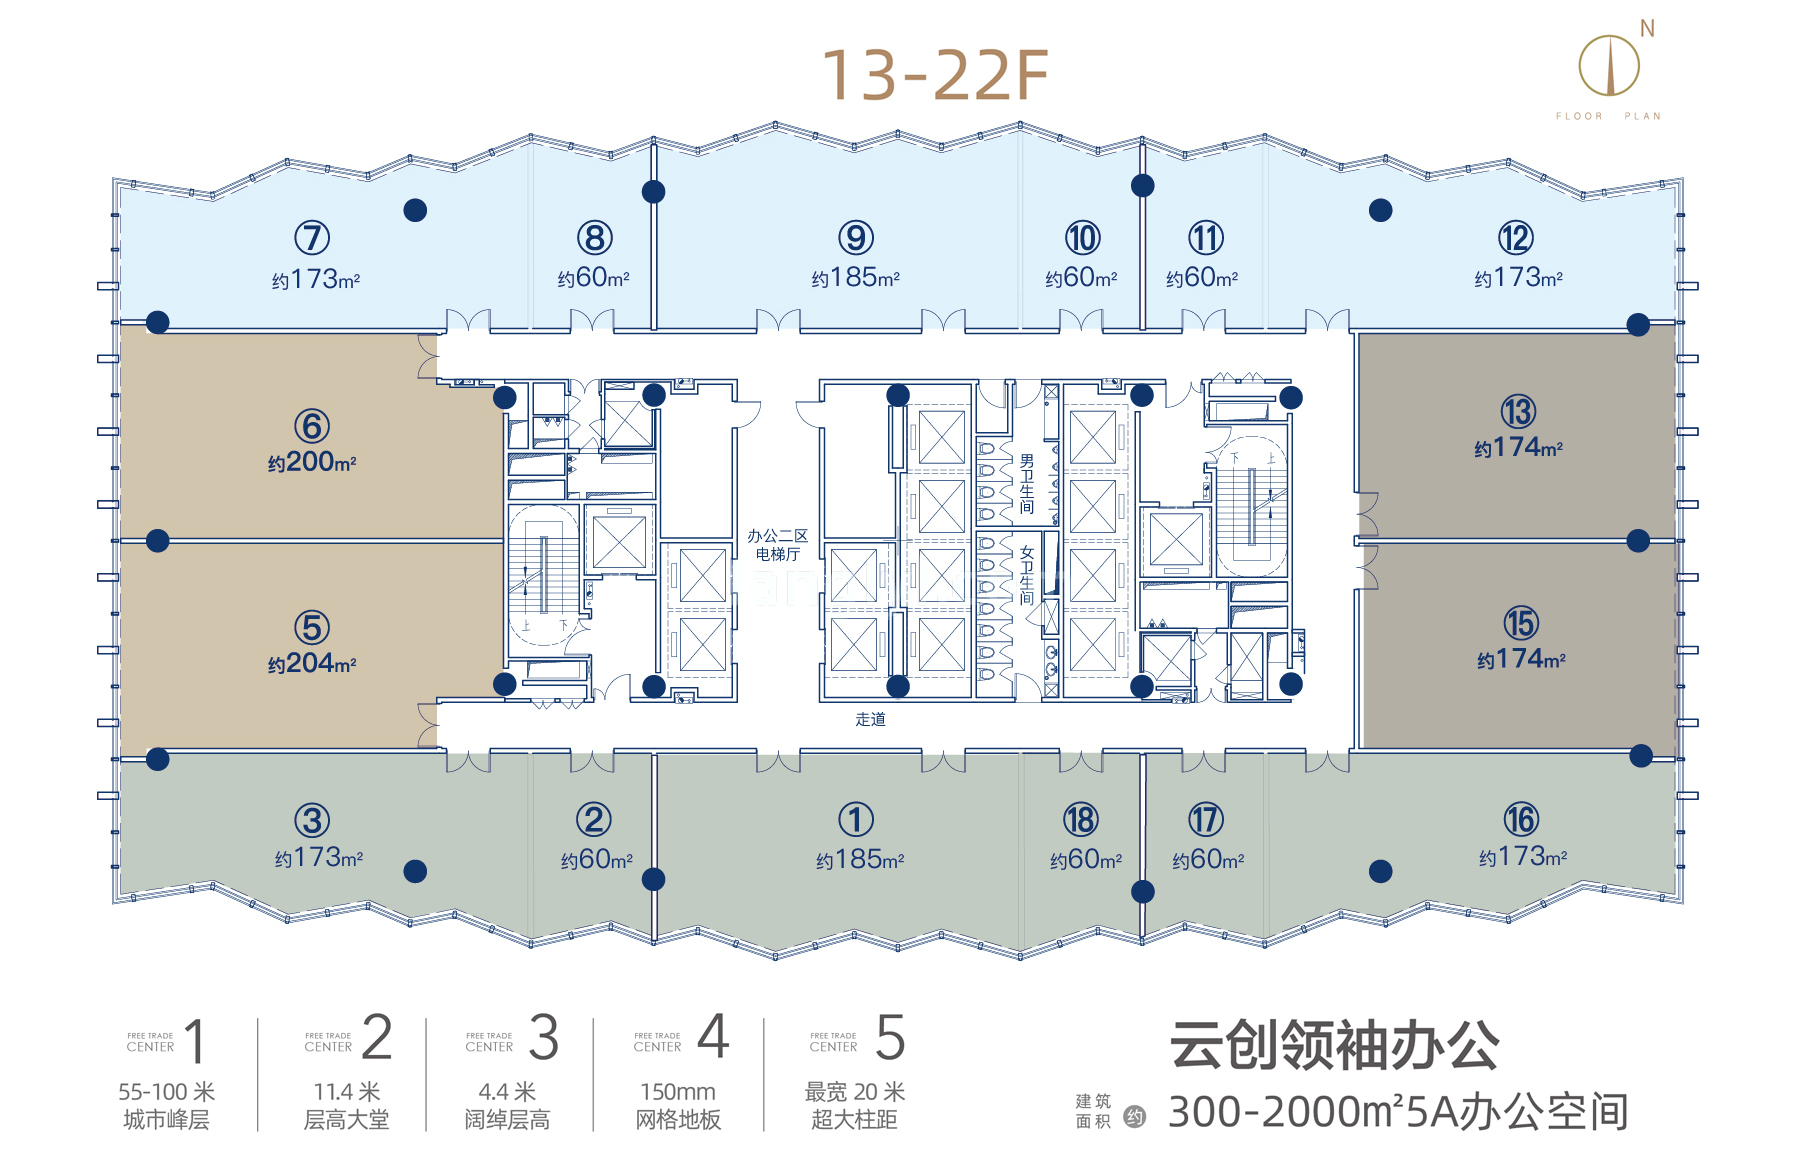 中交国际自贸中心 写字楼 13-22F云创领袖办公 建筑面积60-204㎡